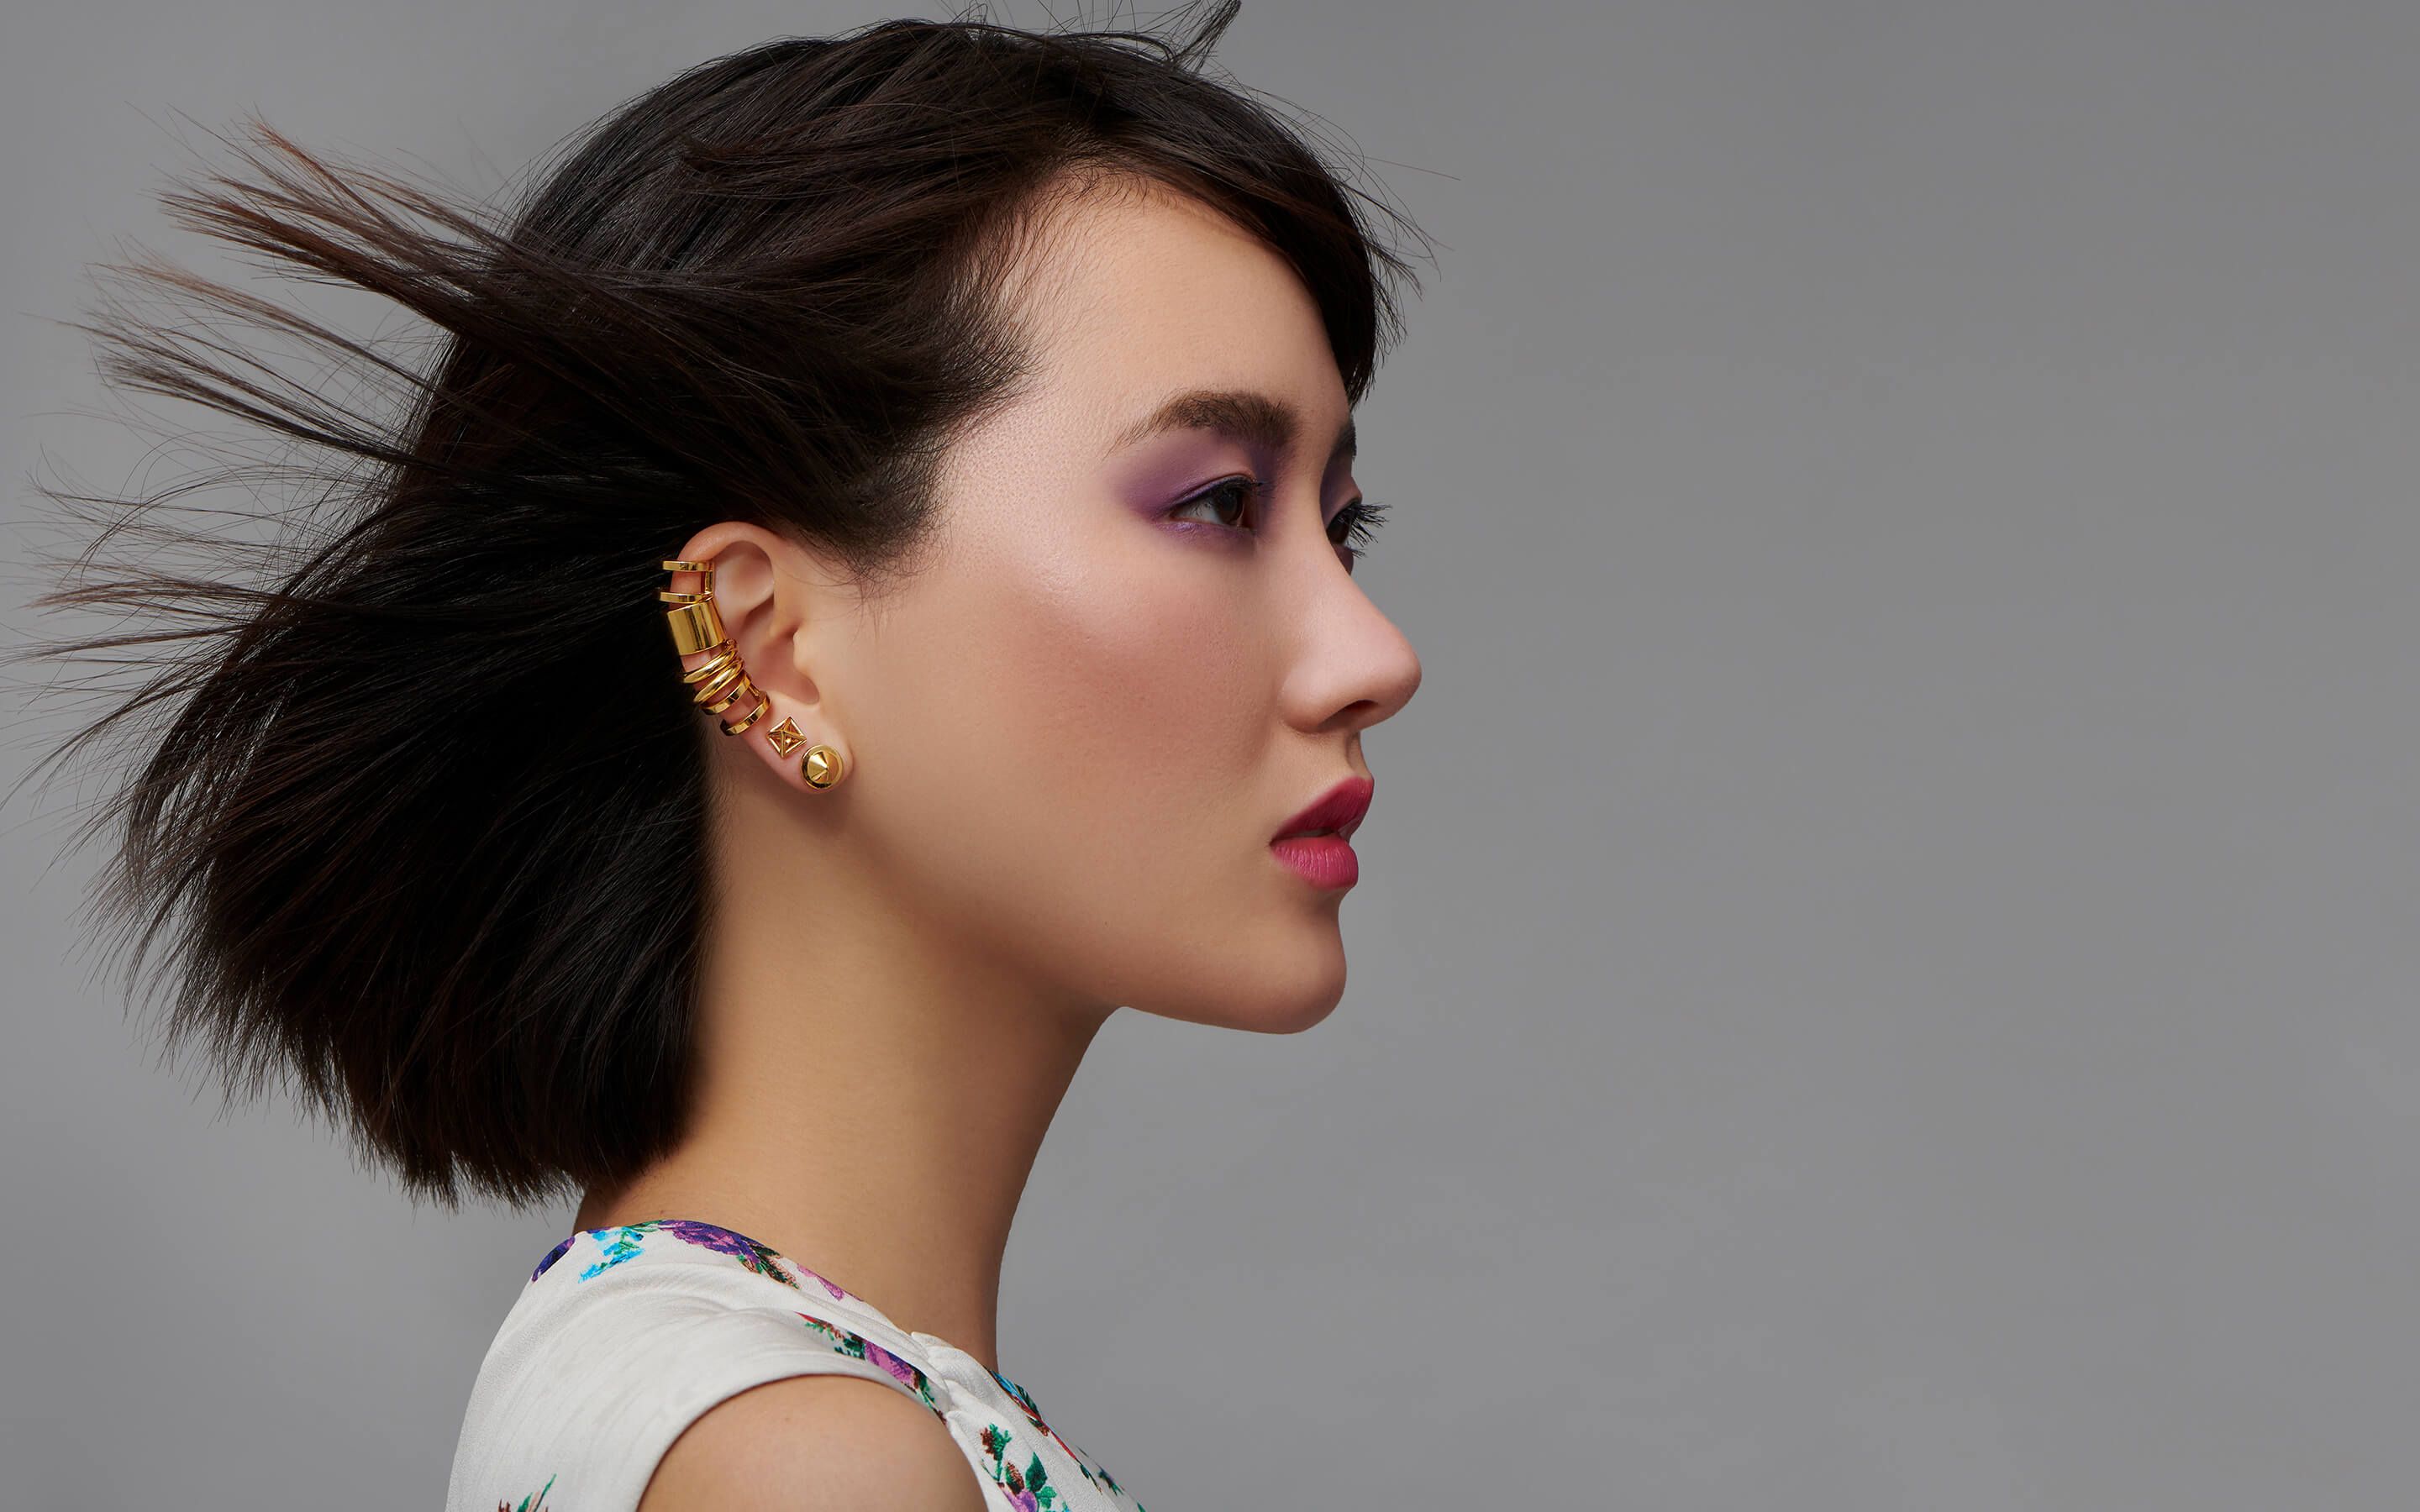 Woman model wearing Auvere 22 karat gold earrings